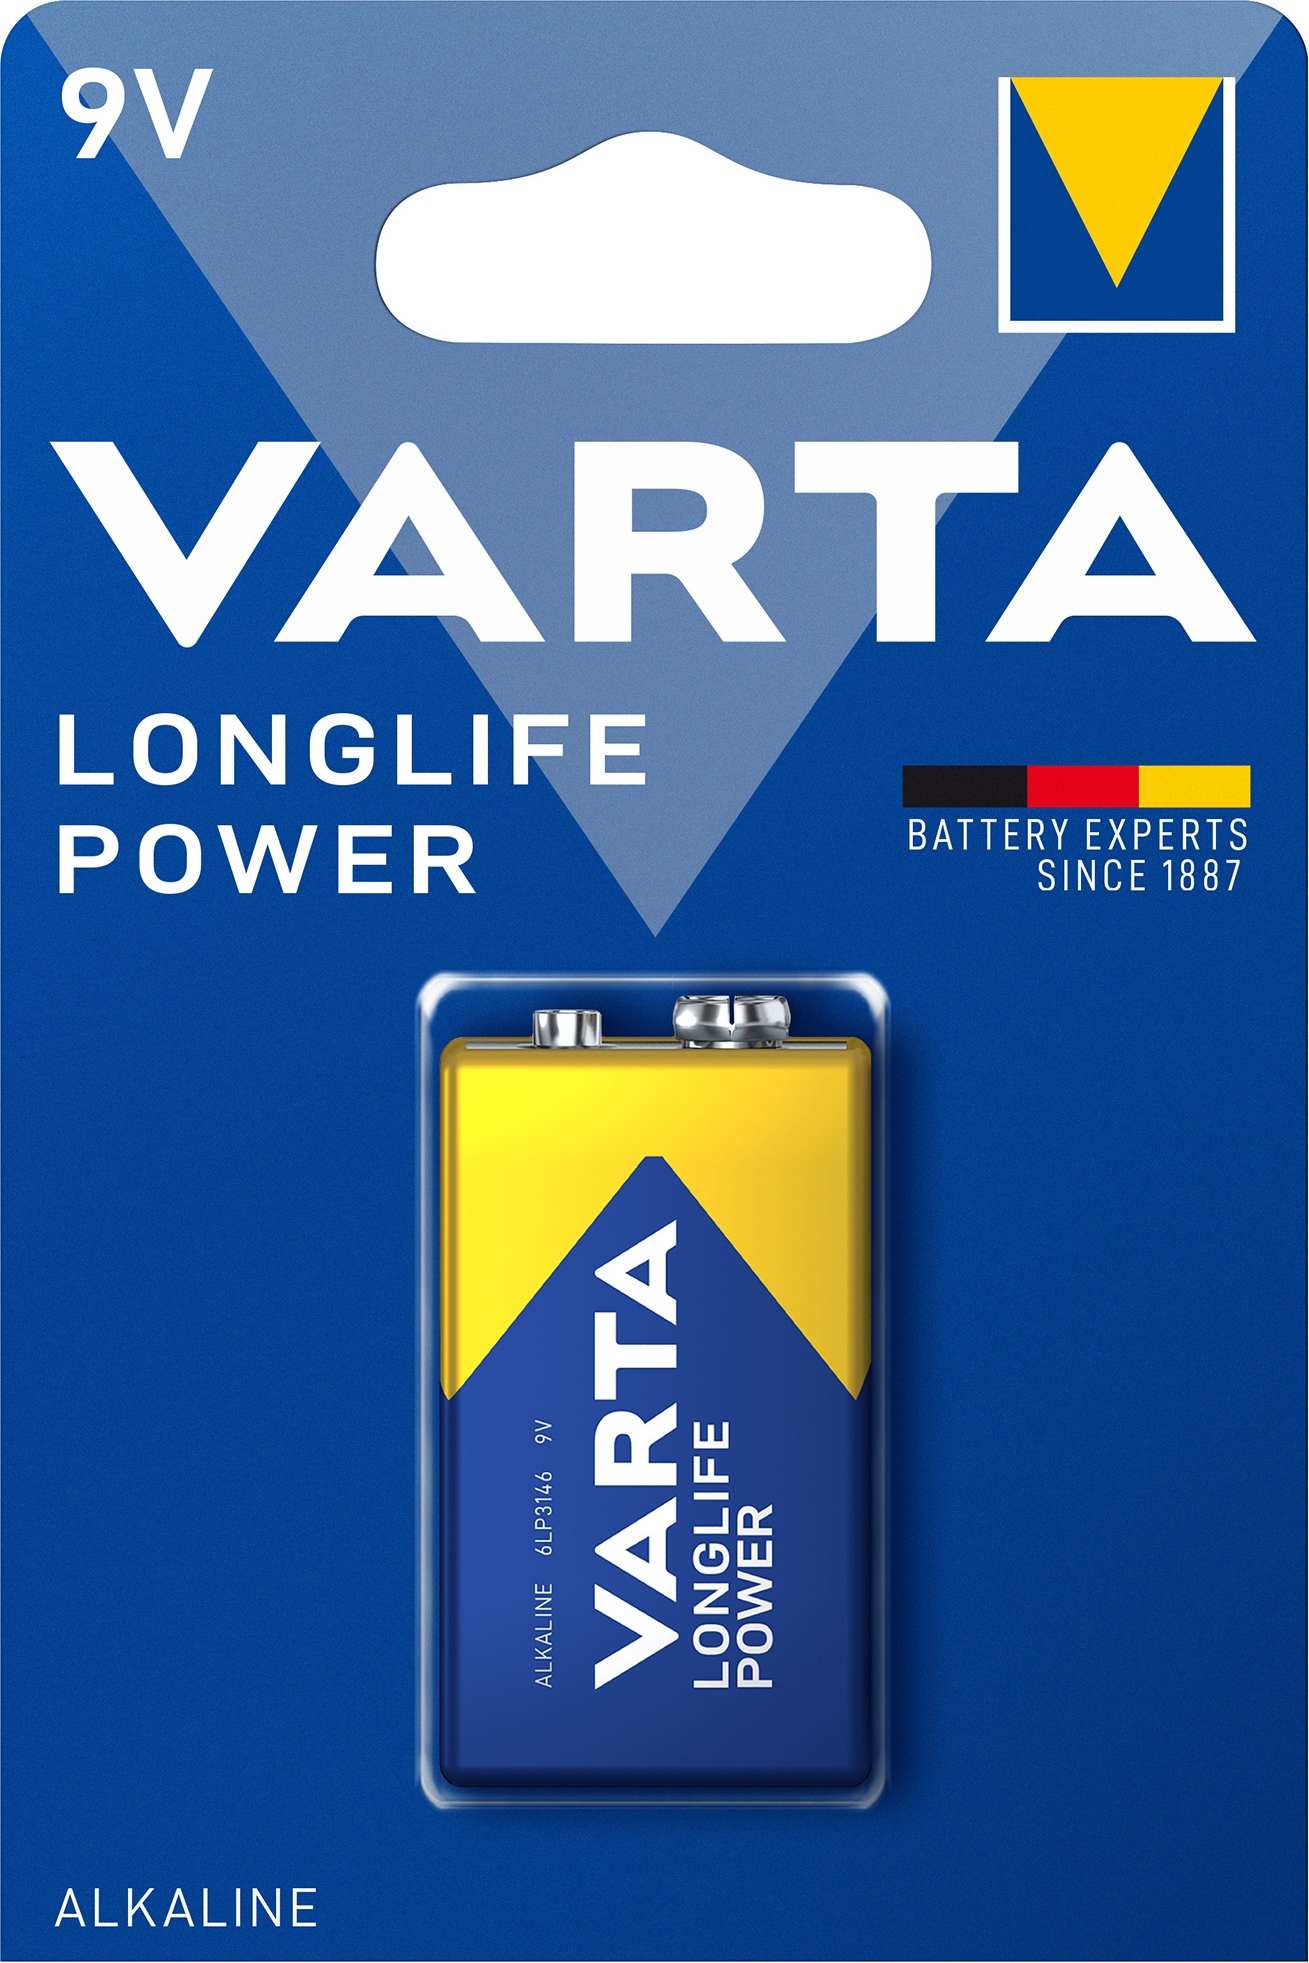 Billede af Varta Longlife Power 9V-batteri (1-pak) hos Elgiganten